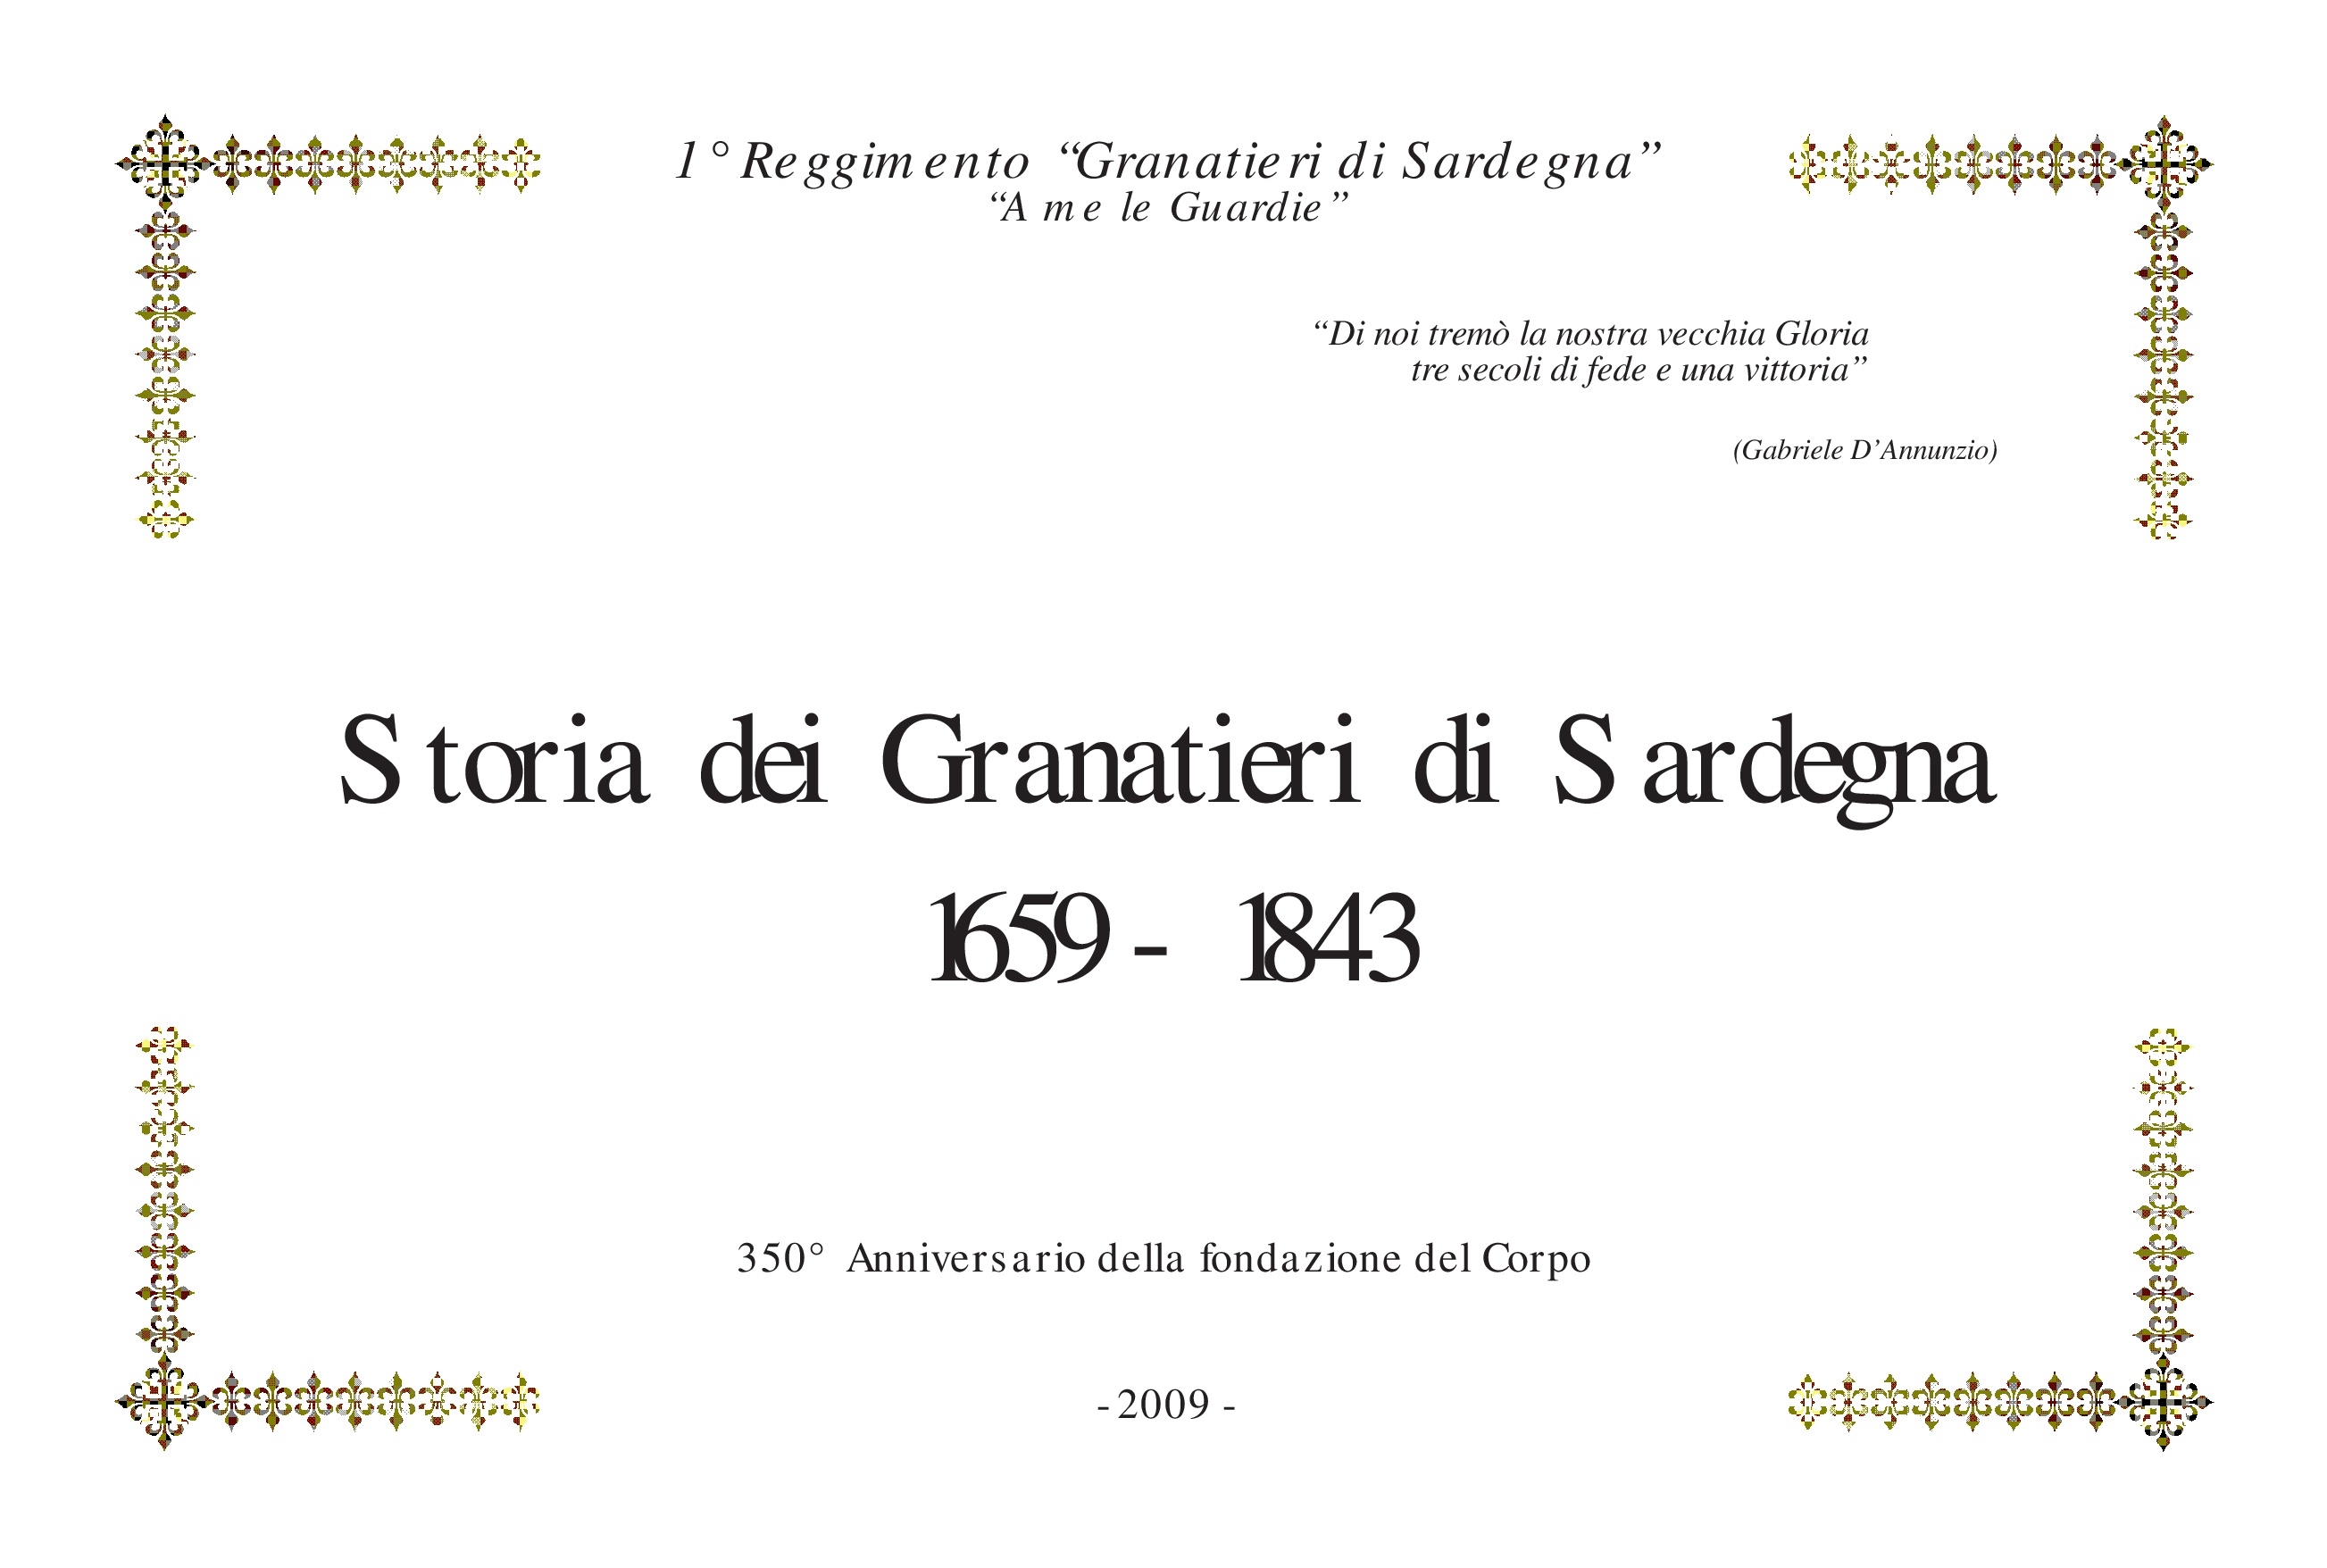  LA STORIA DEI GRANATIERI DI SARDEGNA – 1659-1843